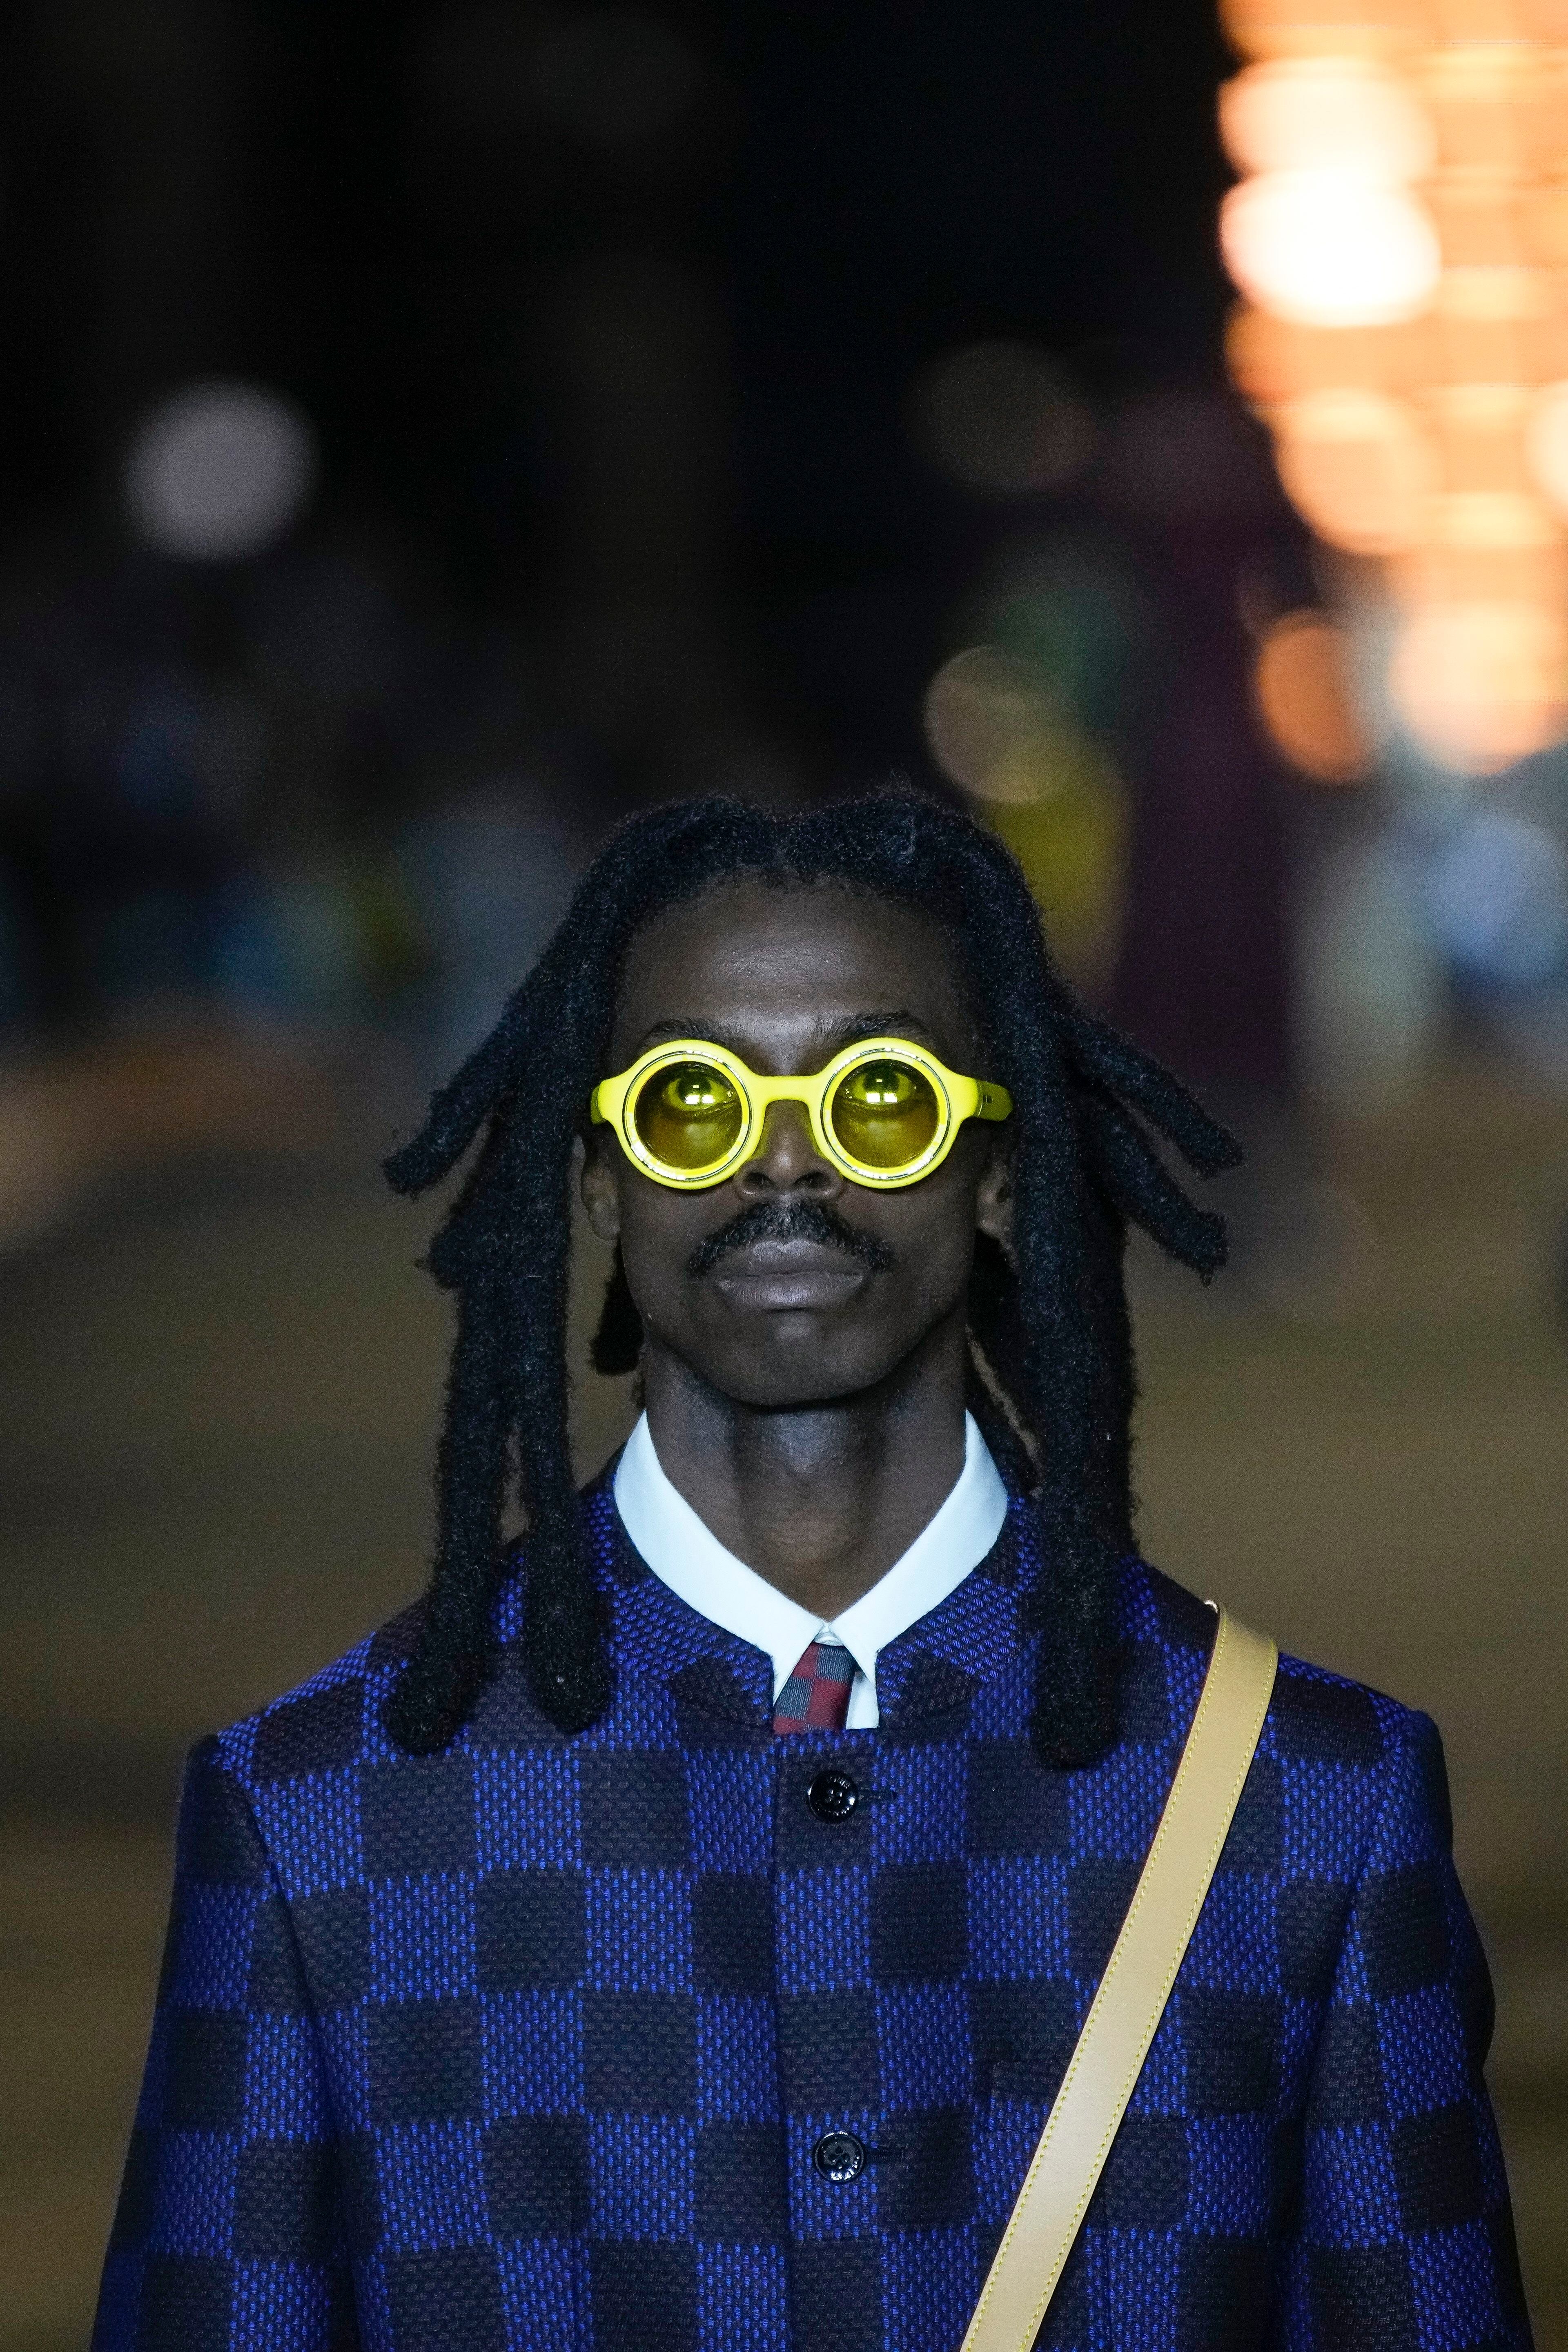 Louis Vuitton Men's Sunglasses for sale in Miami, Florida